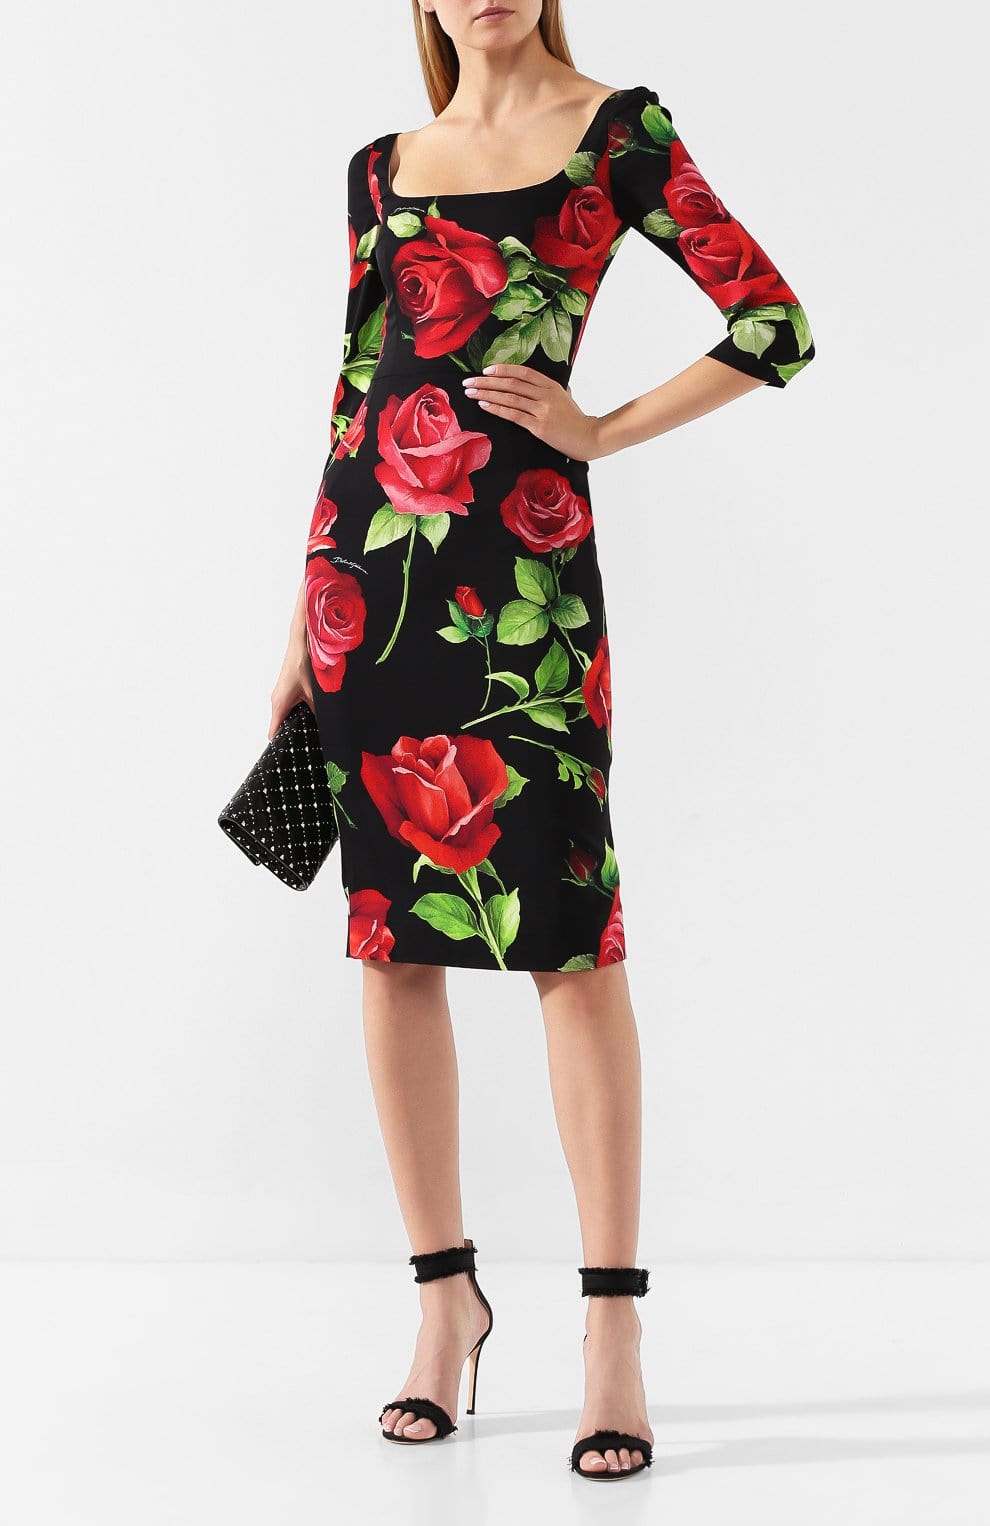 Dolce & Gabbana Portofino Print Fitted Dress